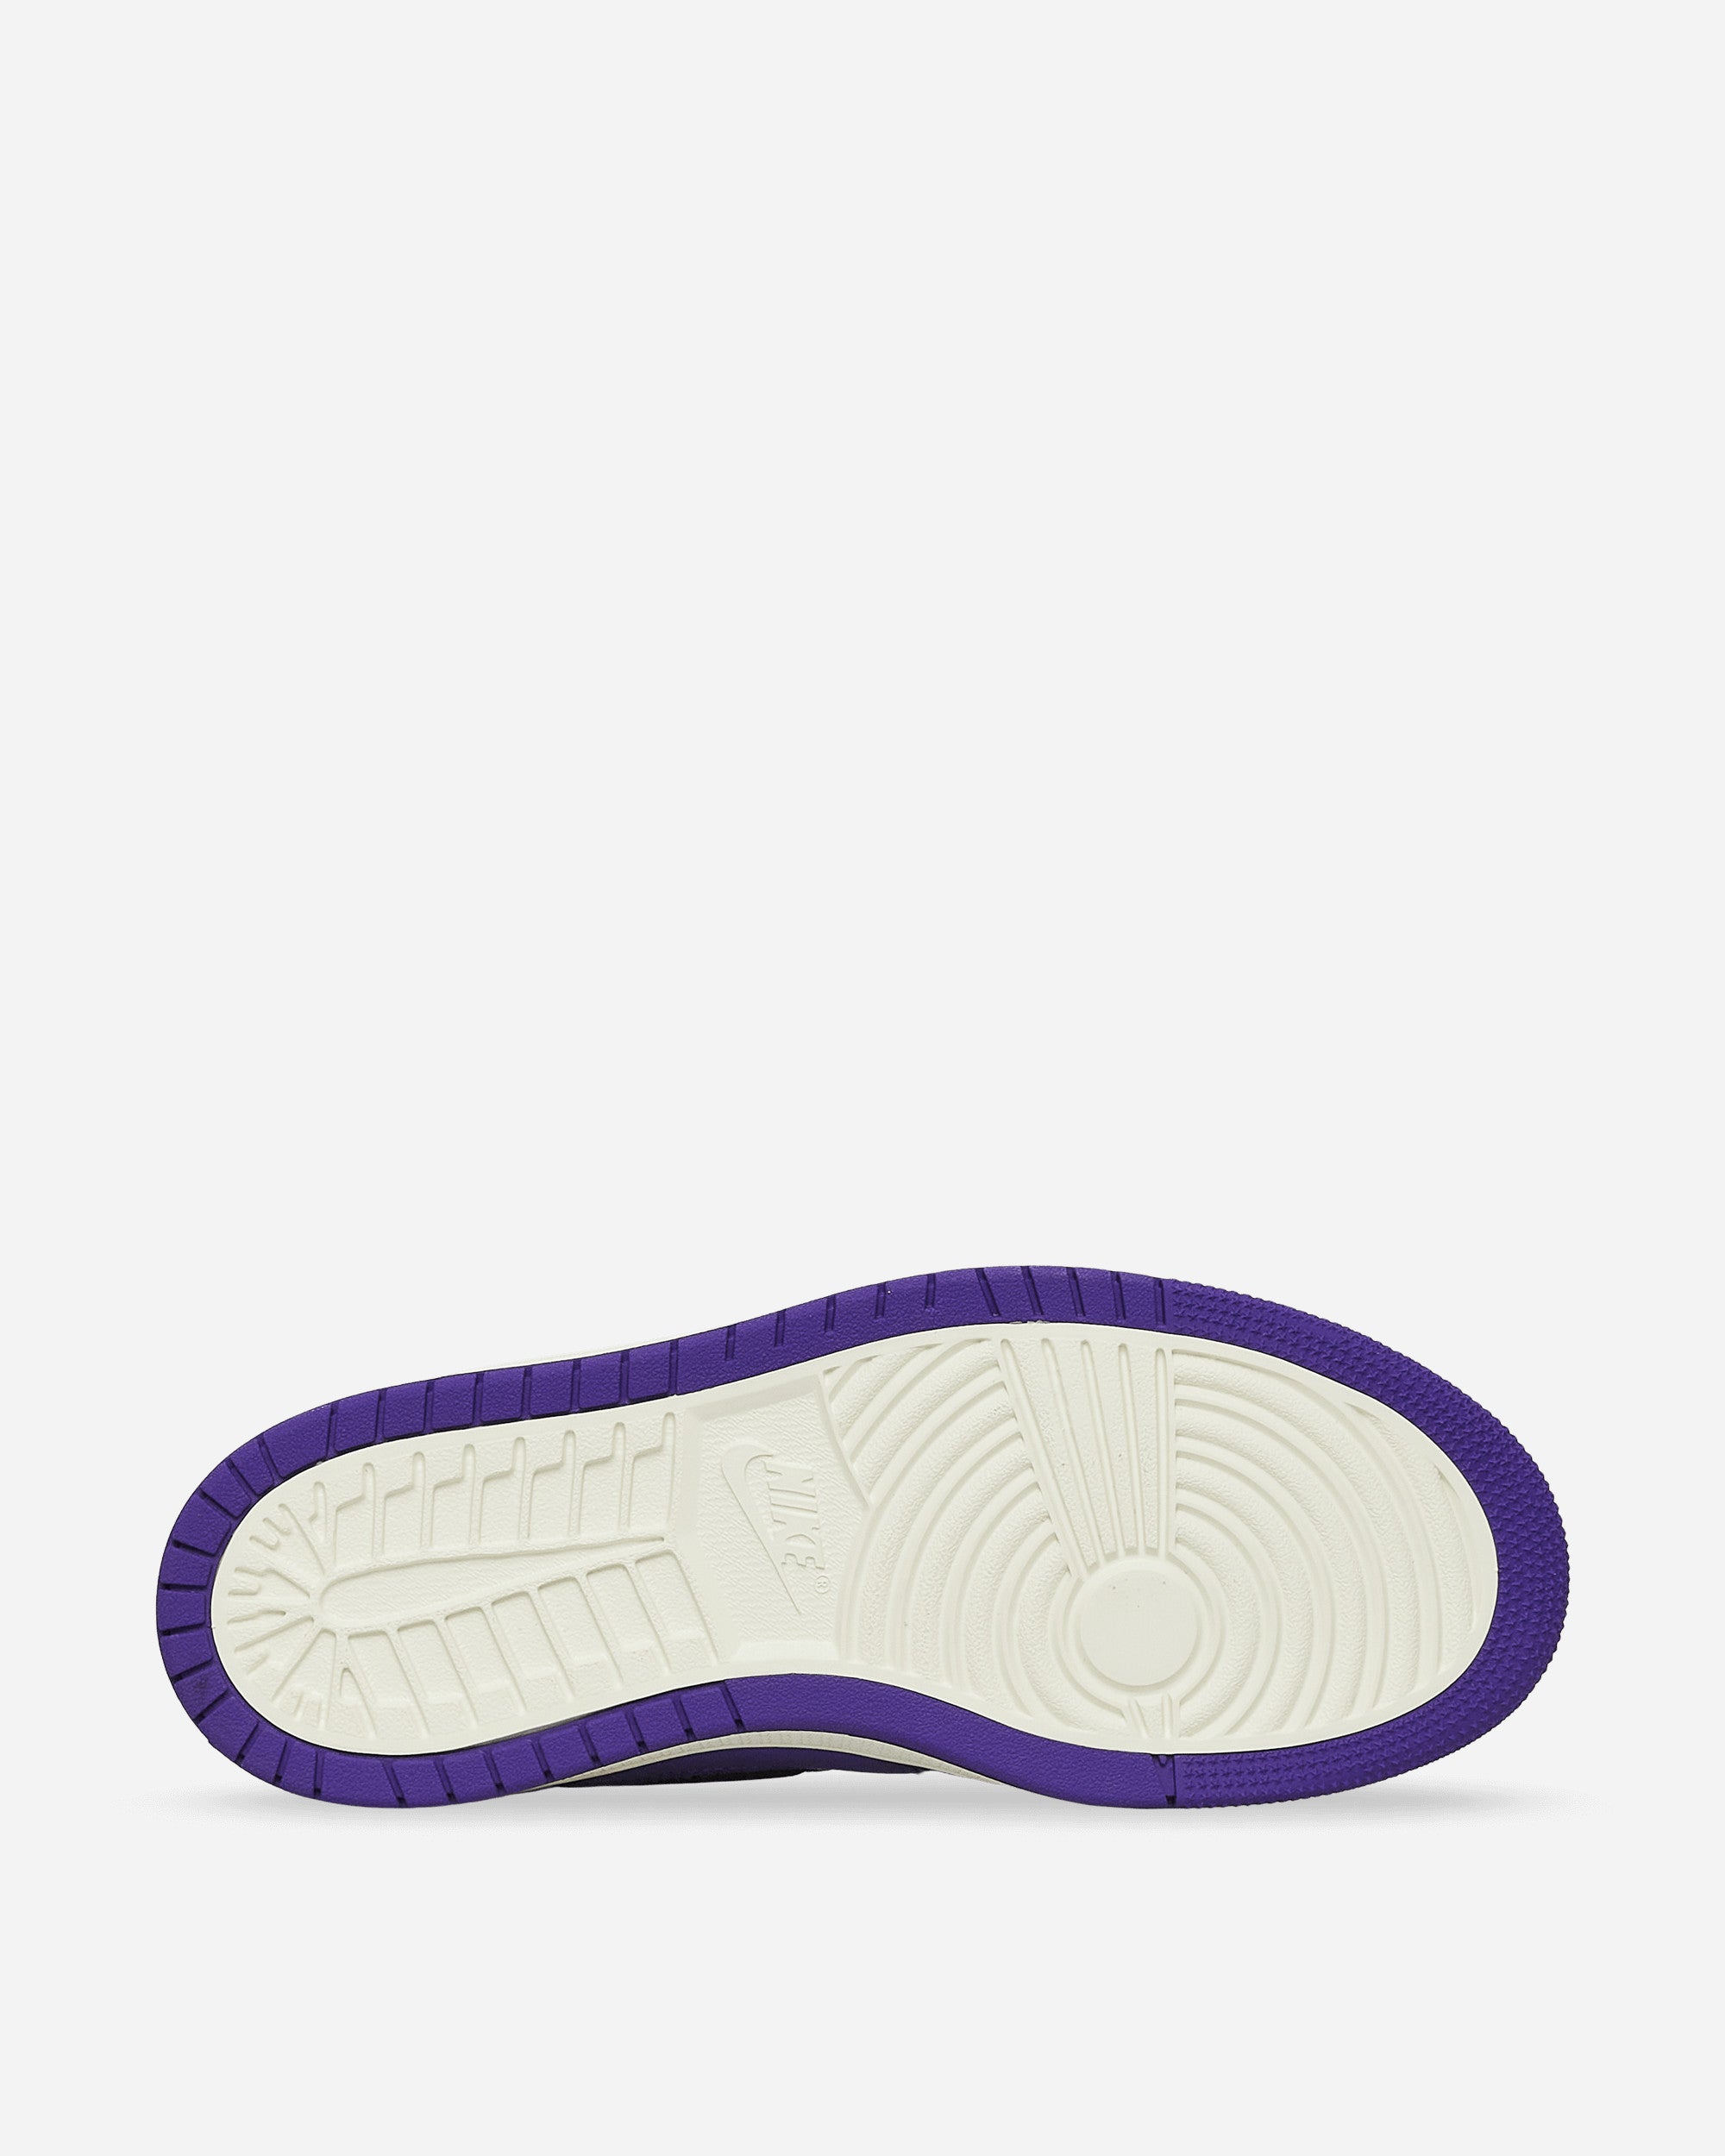 Nike Jordan Air Jordan 1 Zoom Air Comfort Court Purple/Black Sneakers High CT0979-505